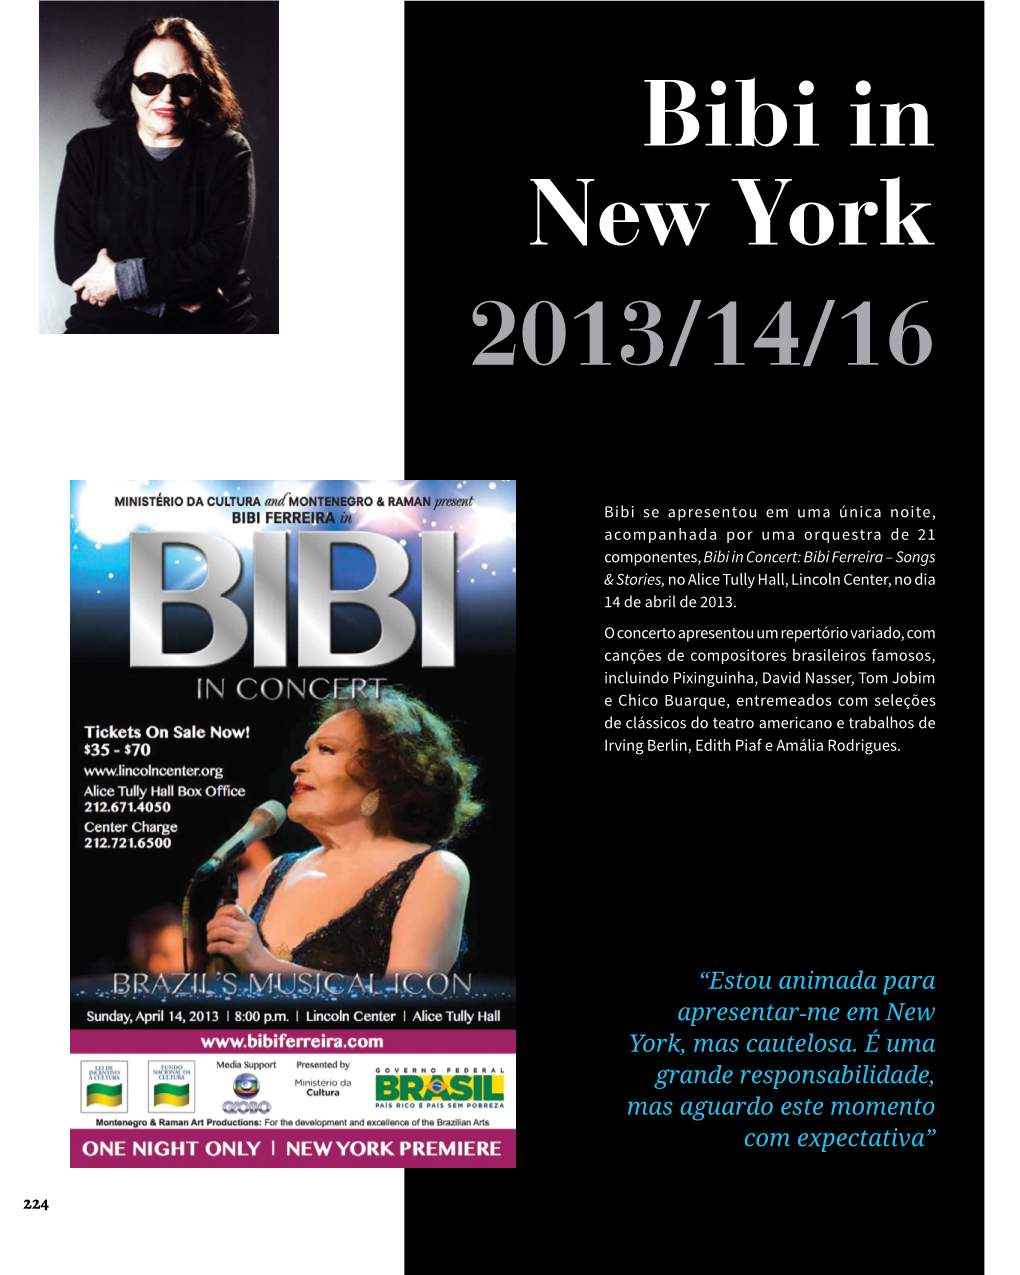 Bibi in New York 2013/14/16